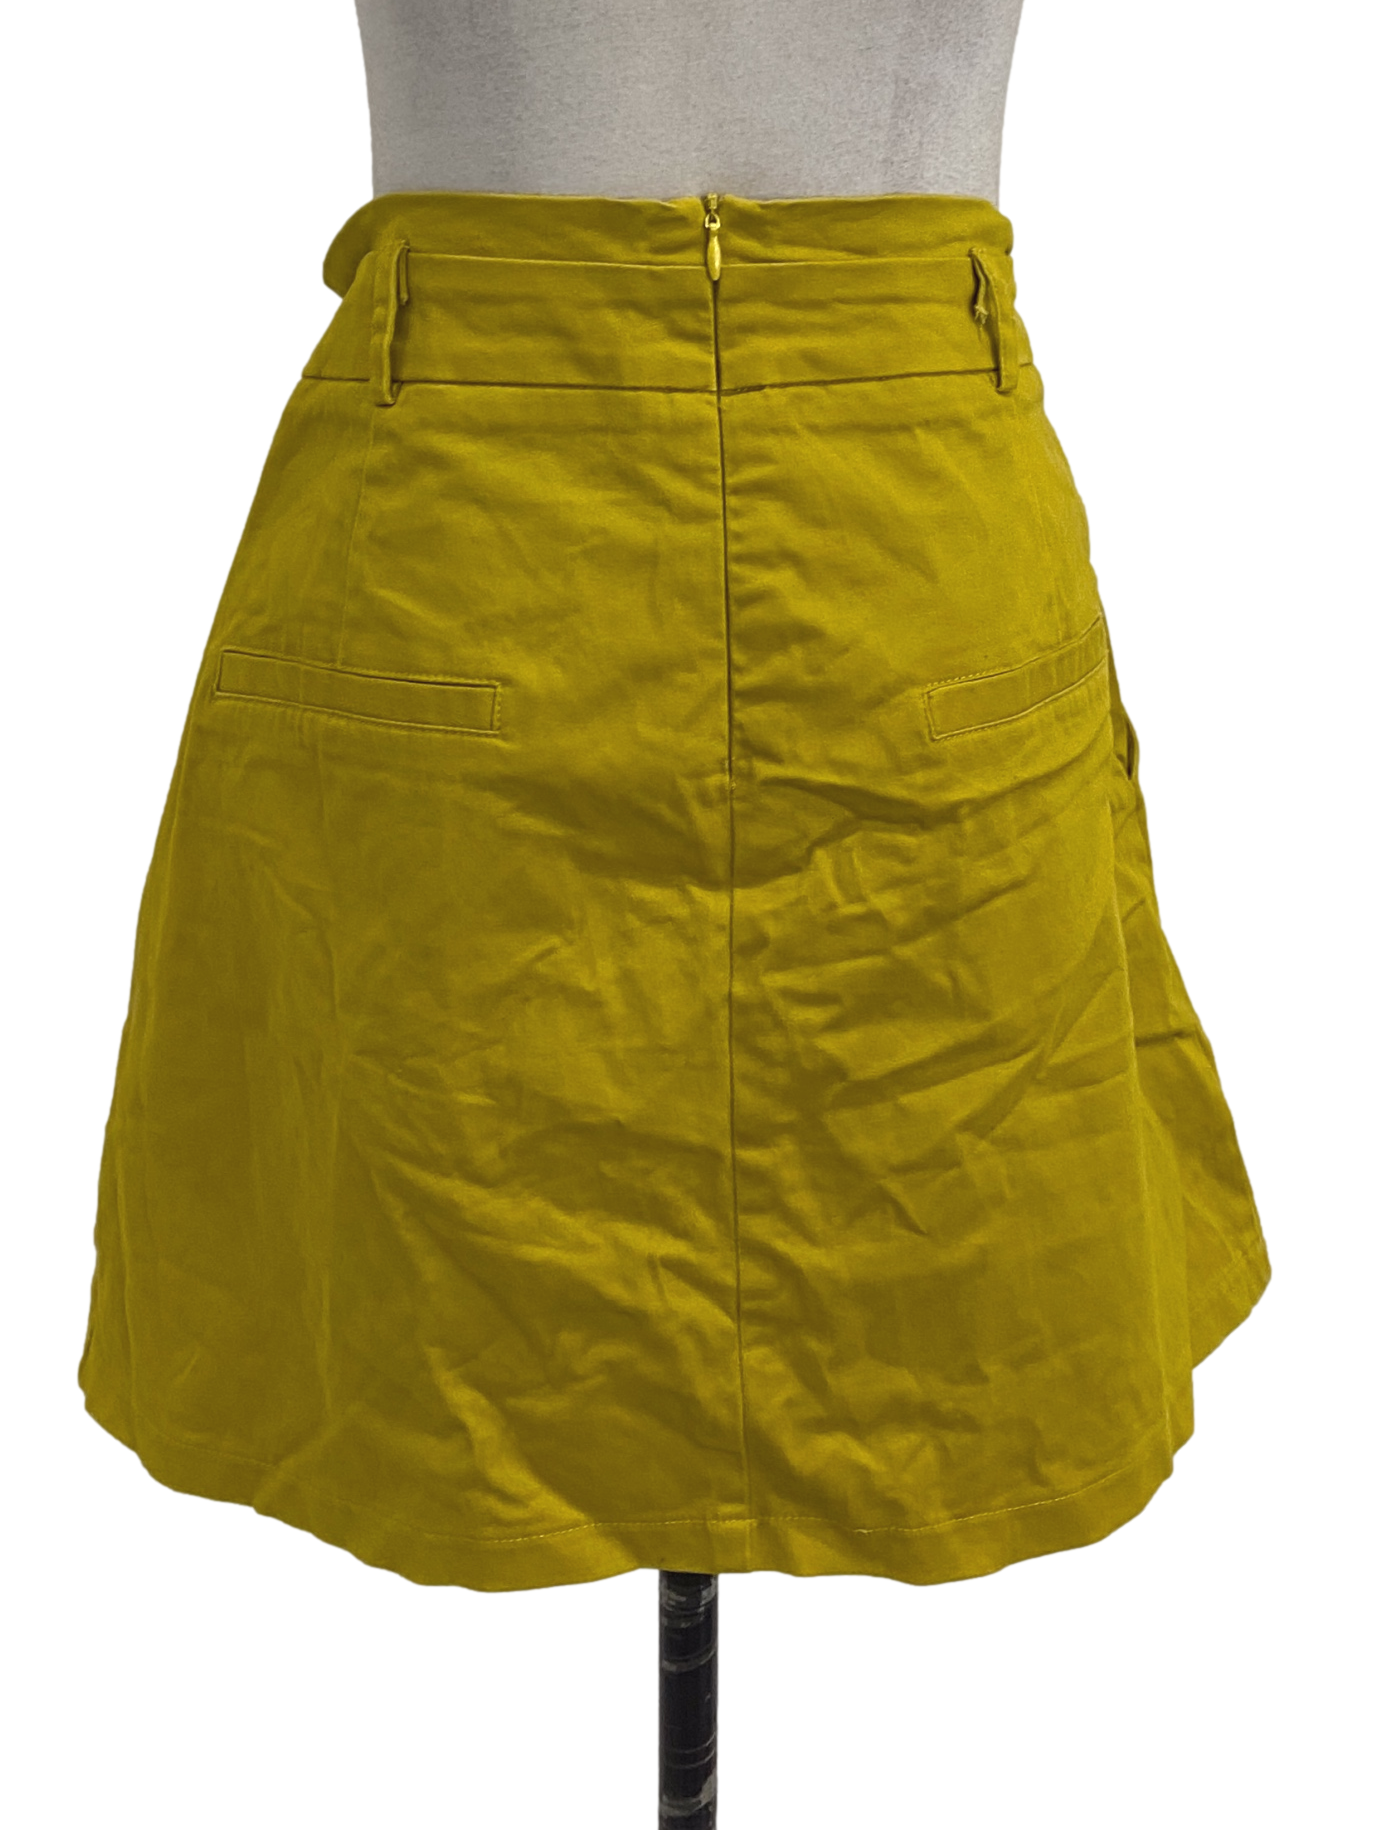 Old Gold Mini Skirt